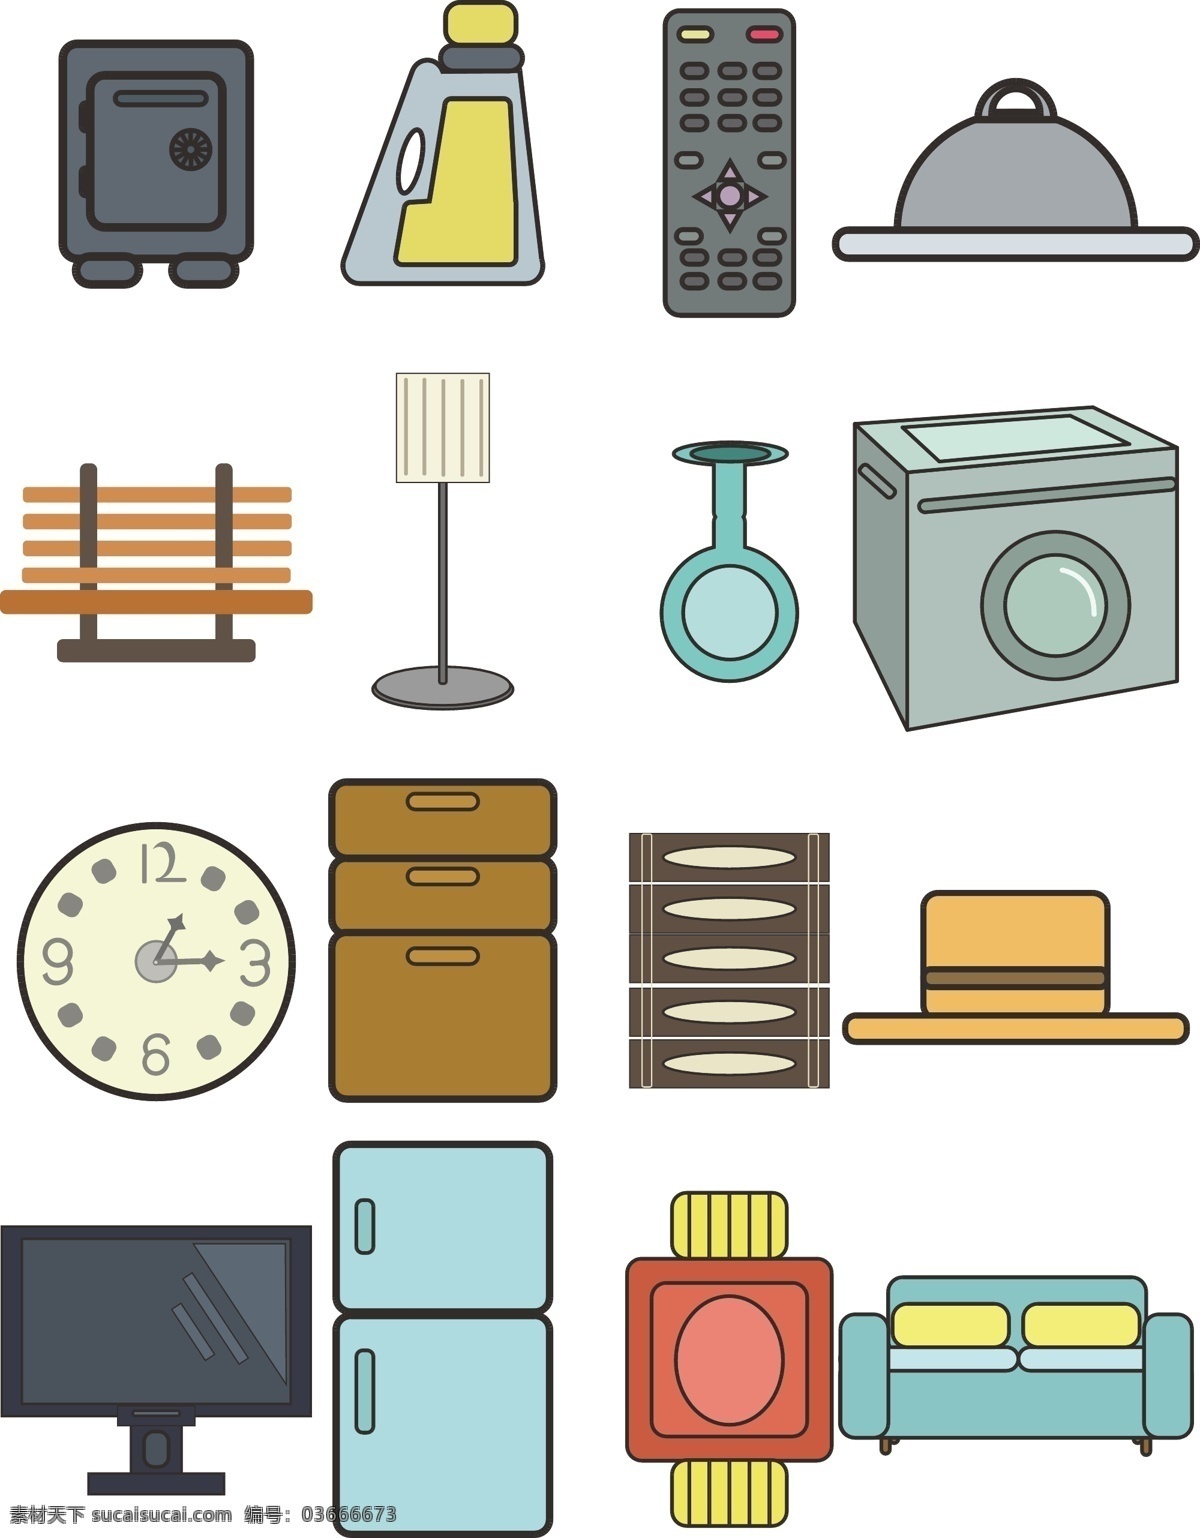 简约 电视 冰箱 沙发 元素 原创 生活用品 icon 可商用 矢量 洗衣机 保险箱